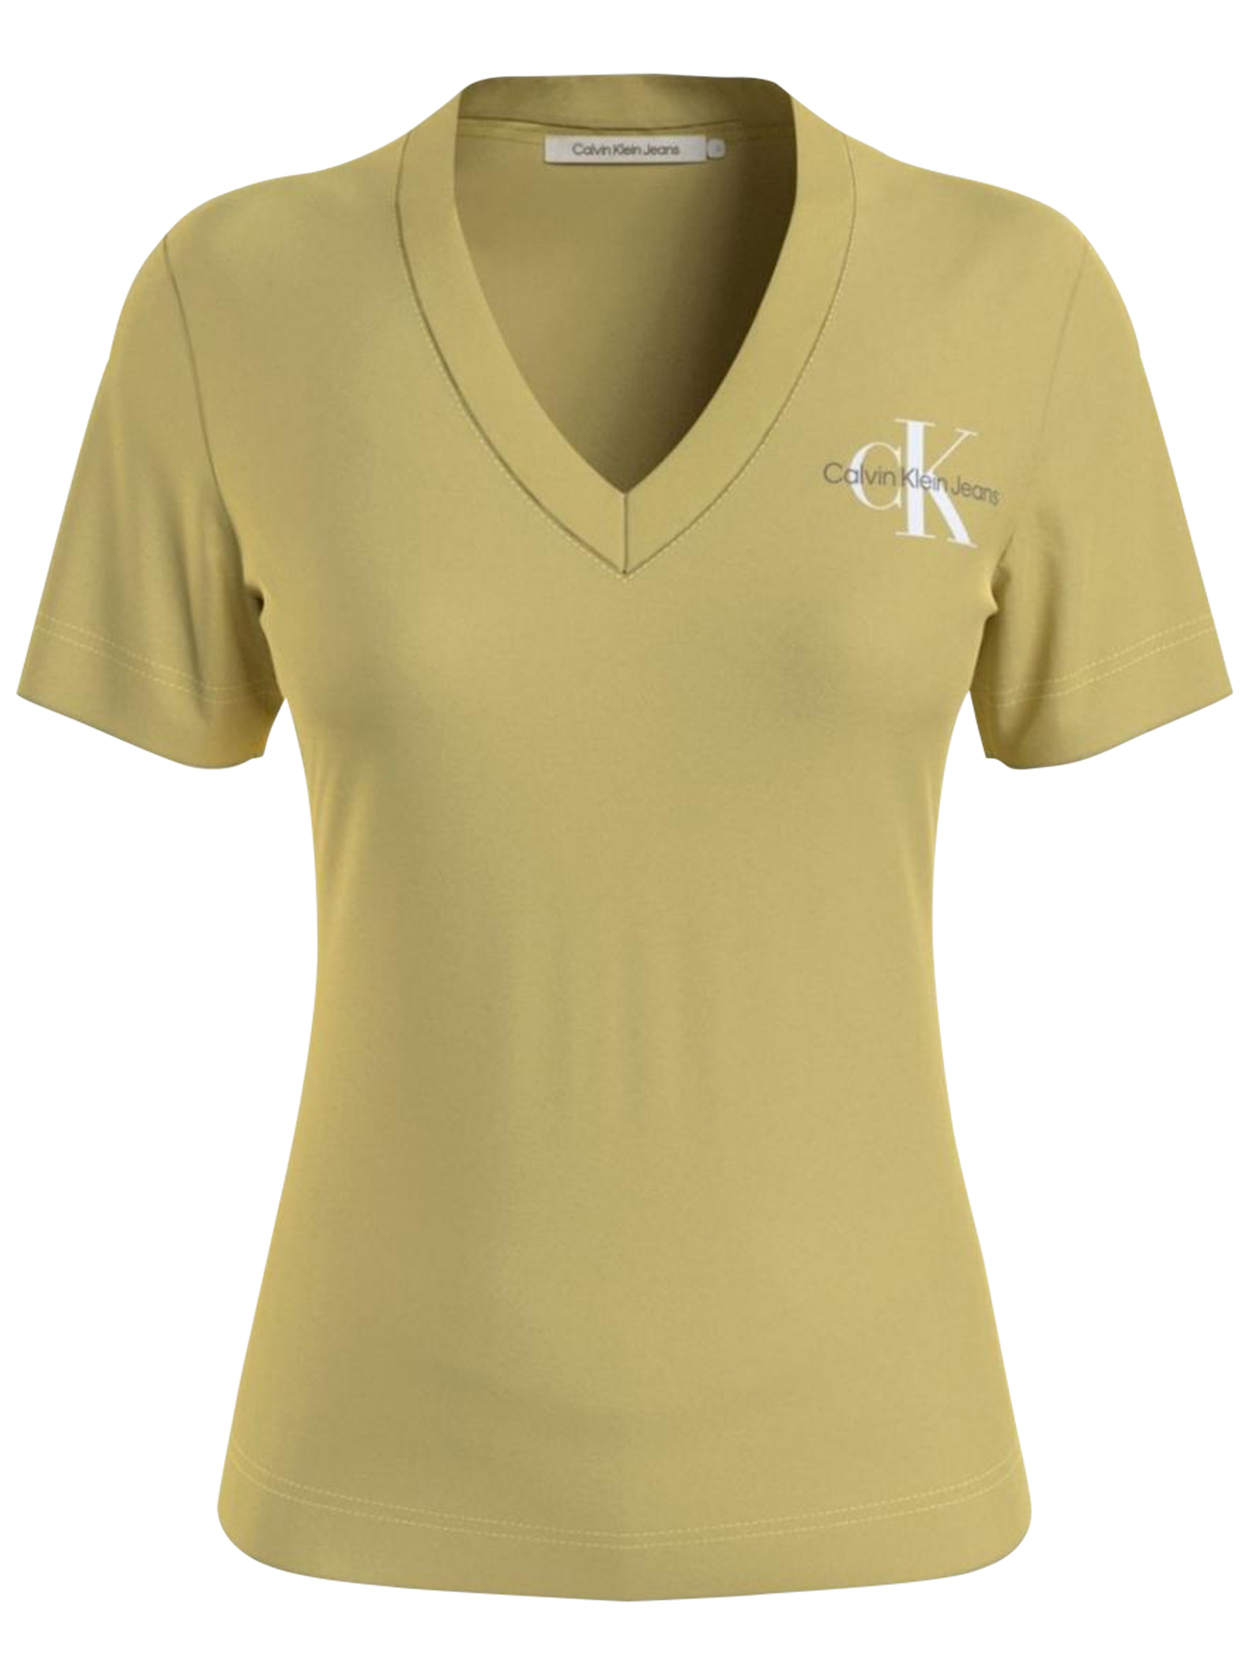 T-shirt FEMME Calvin Klein coton avec manches courtes et col v jaune